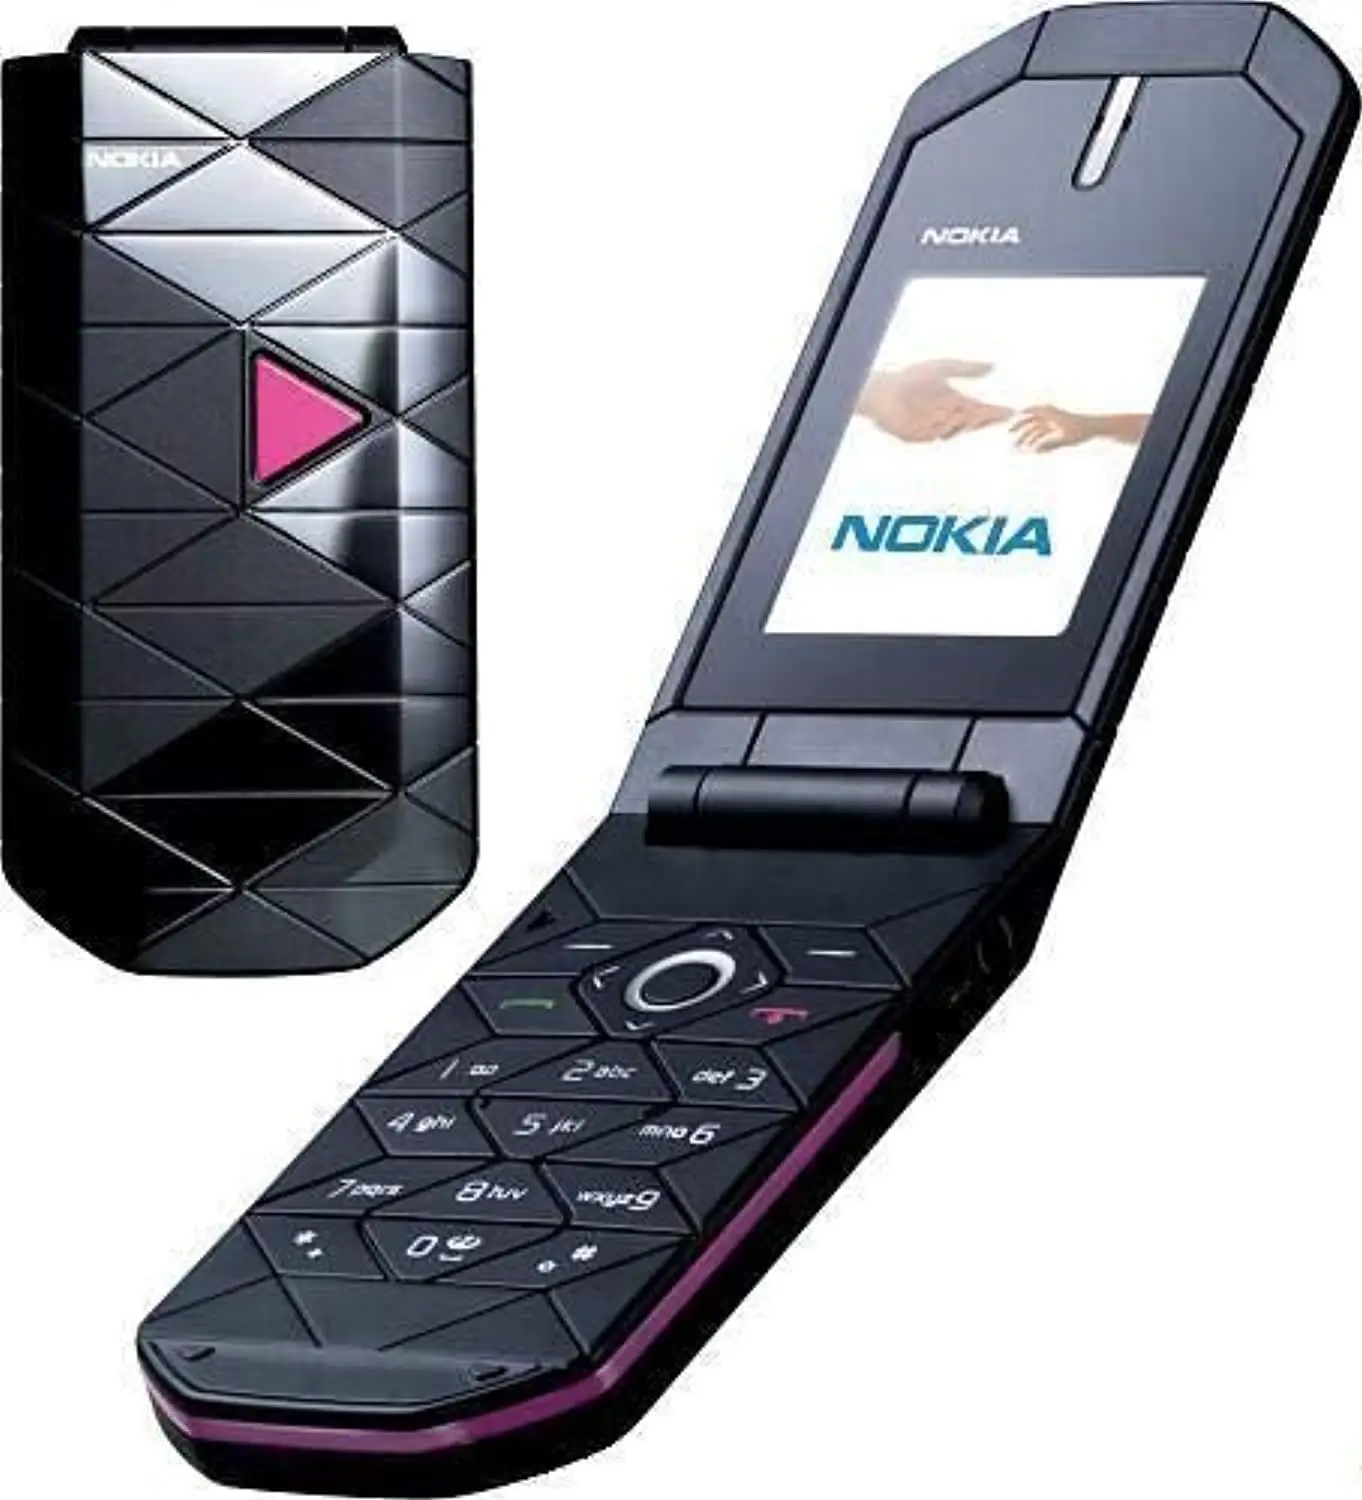 Teléfono móvil de segunda mano para Nokia 7070 prisma teléfono móvil de segunda mano teléfono con tapa de alta calidad al por mayor precio barato entrega rápida